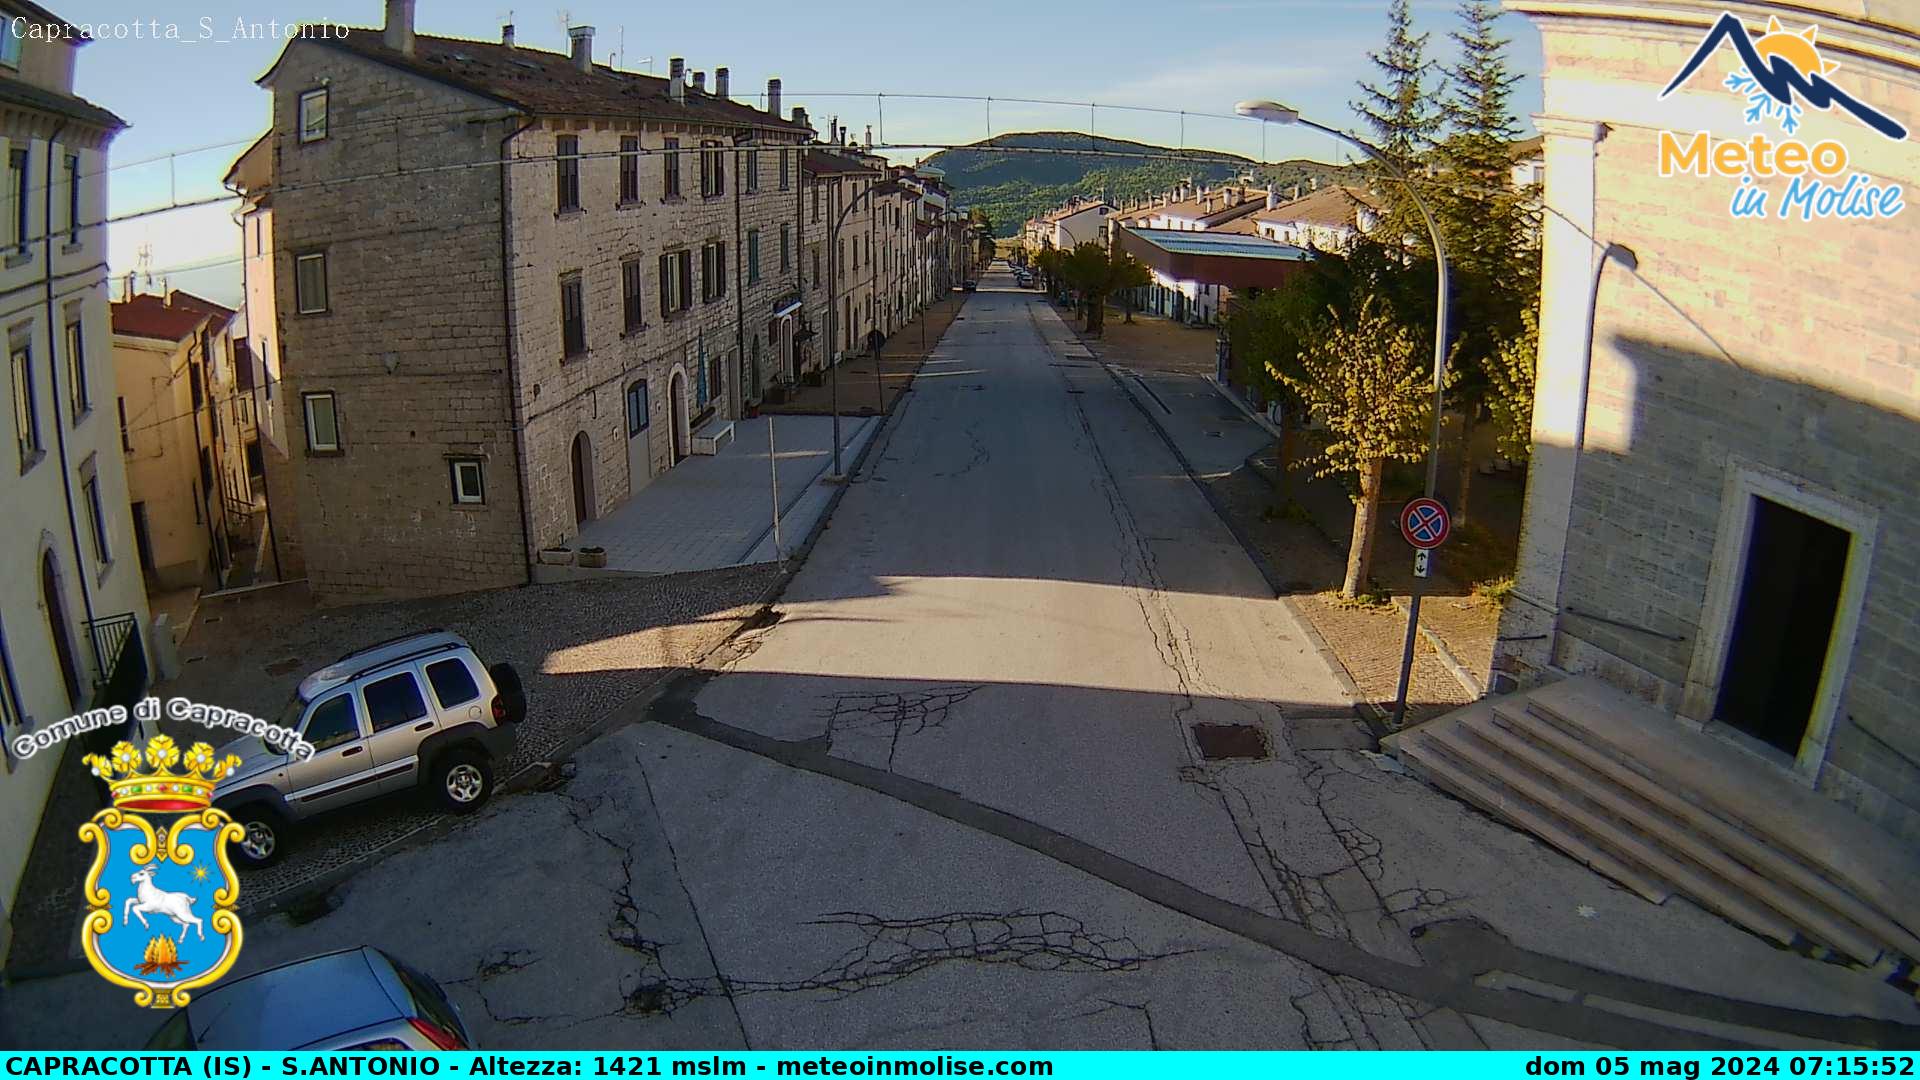 Webcam di Webcam di Capracotta, santa Maria